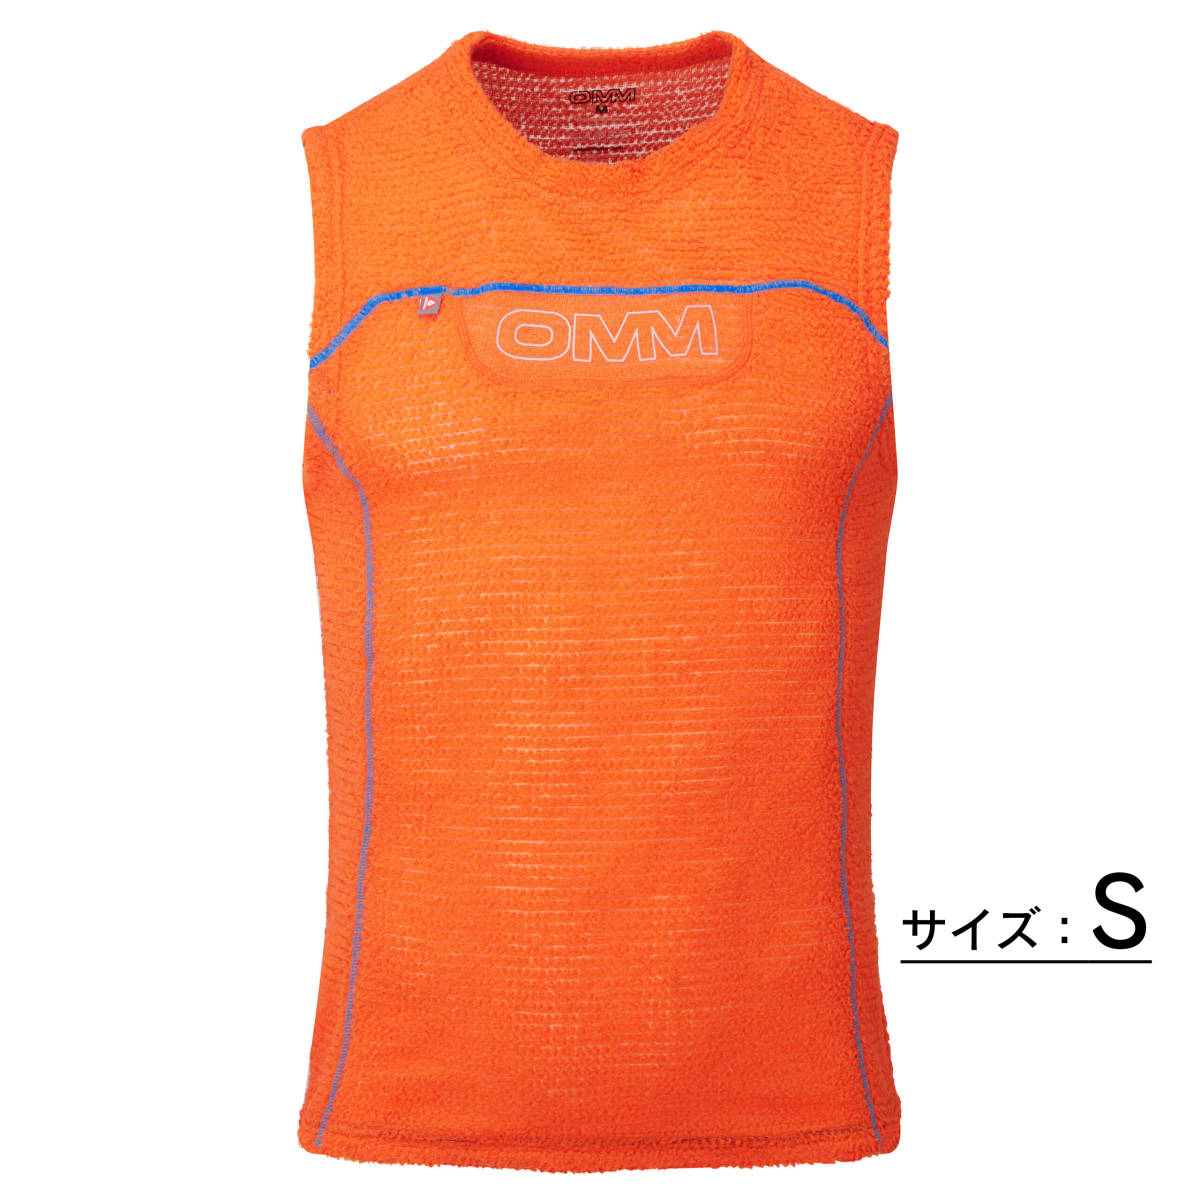 OMM Core Vest コアベスト Orange / S 希少サイズ アウトドア